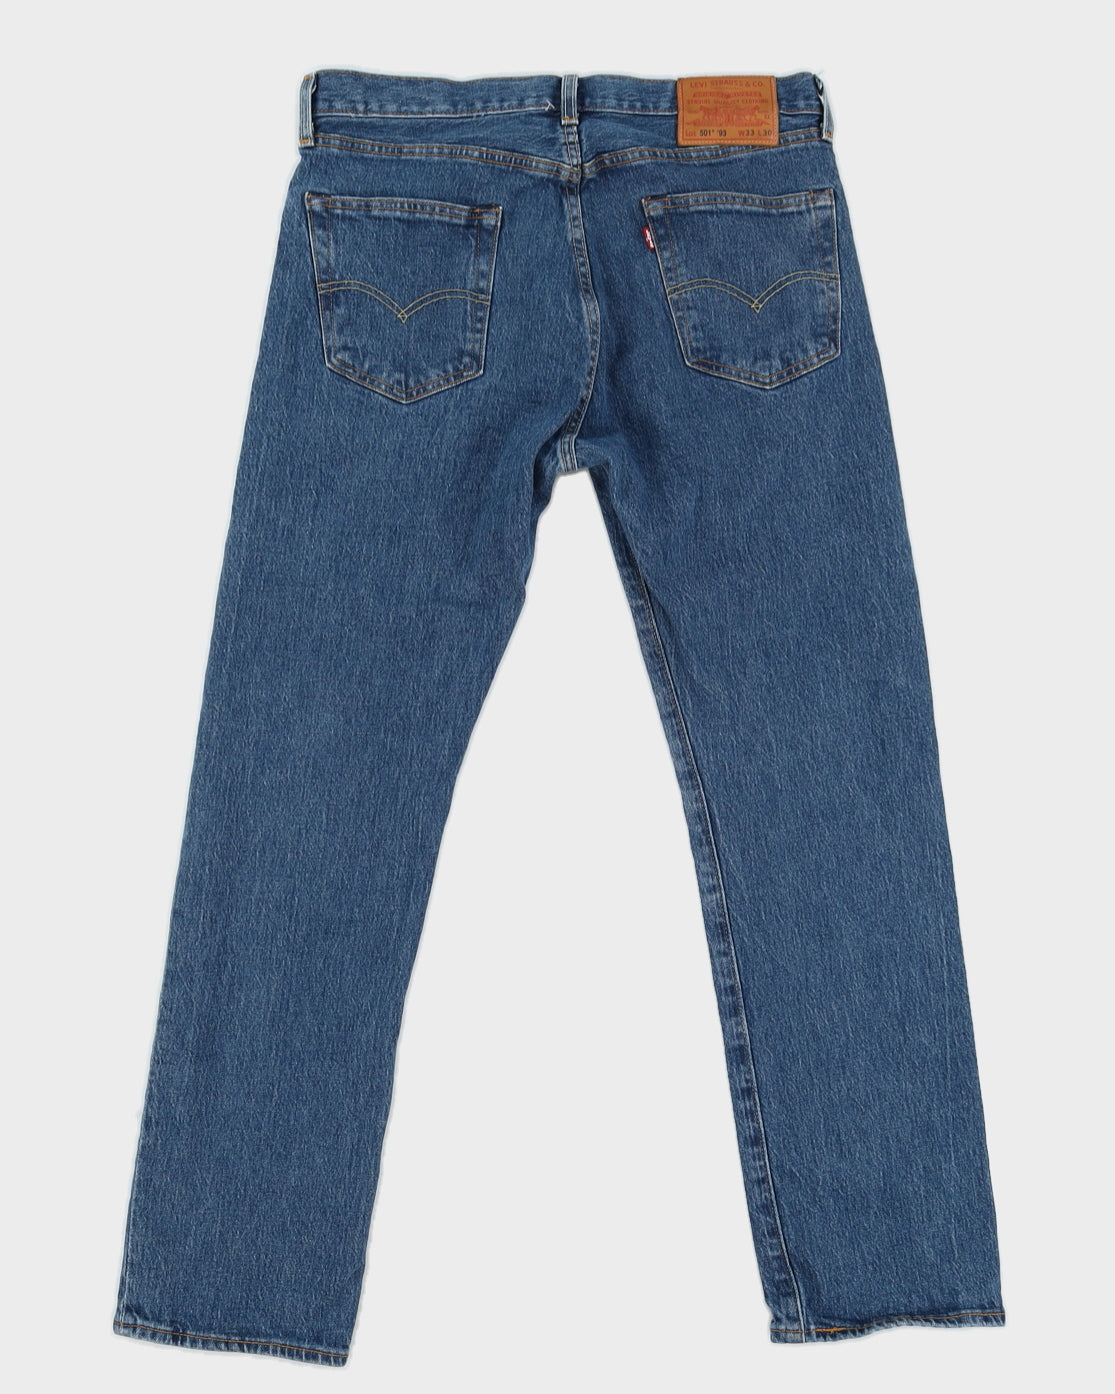 Levi's Medium Wash 501 Jeans - W33 L30